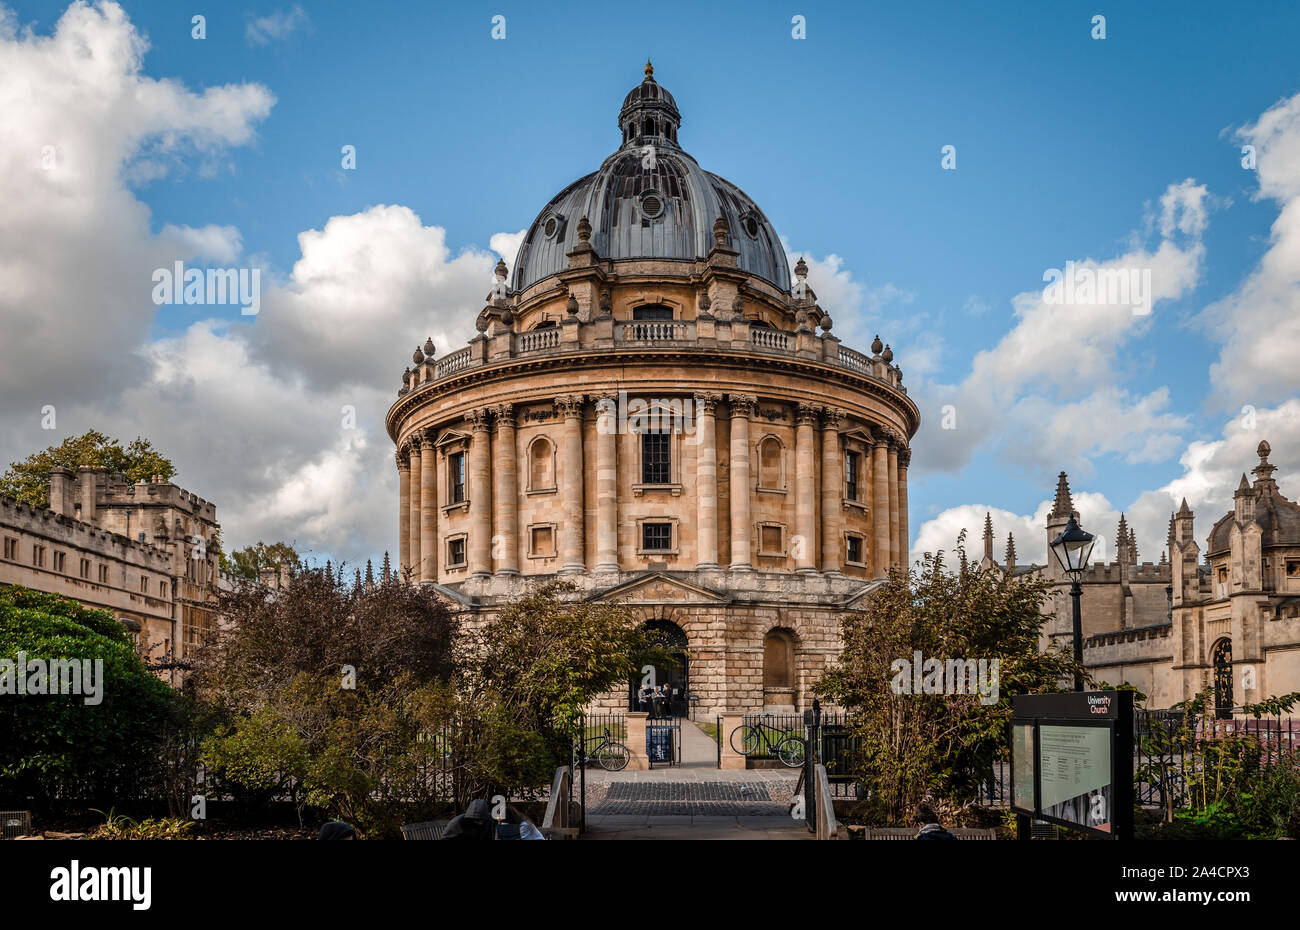 Vue sur la caméra Radcliffe, à Oxford, Royaume-Uni. Il a été construit en 1749 pour abriter la bibliothèque scientifique Radcliffe. La bibliothèque Bodleian est sur la droite. Banque D'Images